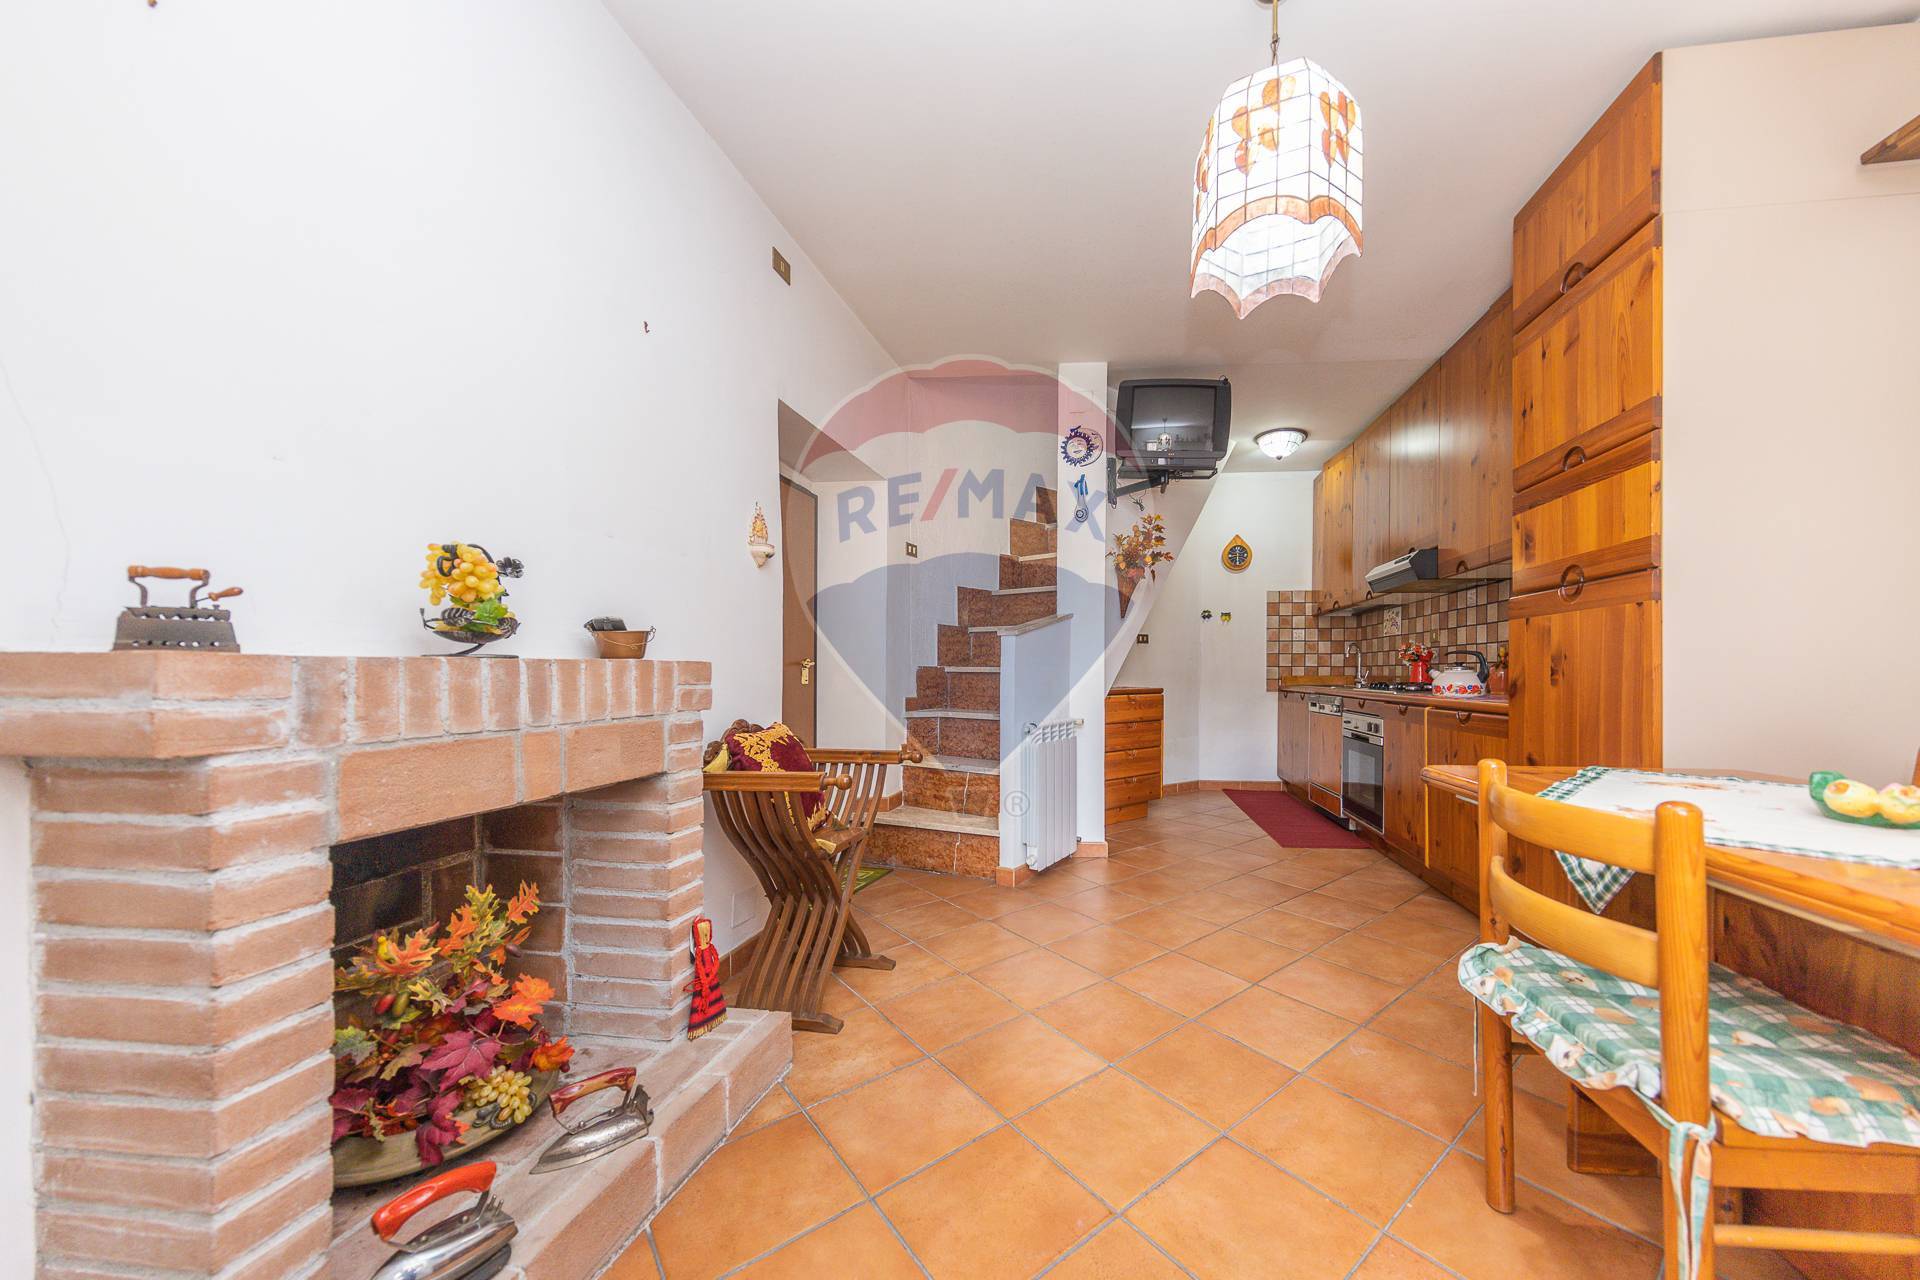 Appartamento in vendita a Subiaco, 3 locali, zona Località: LaTorre, prezzo € 54.000 | CambioCasa.it